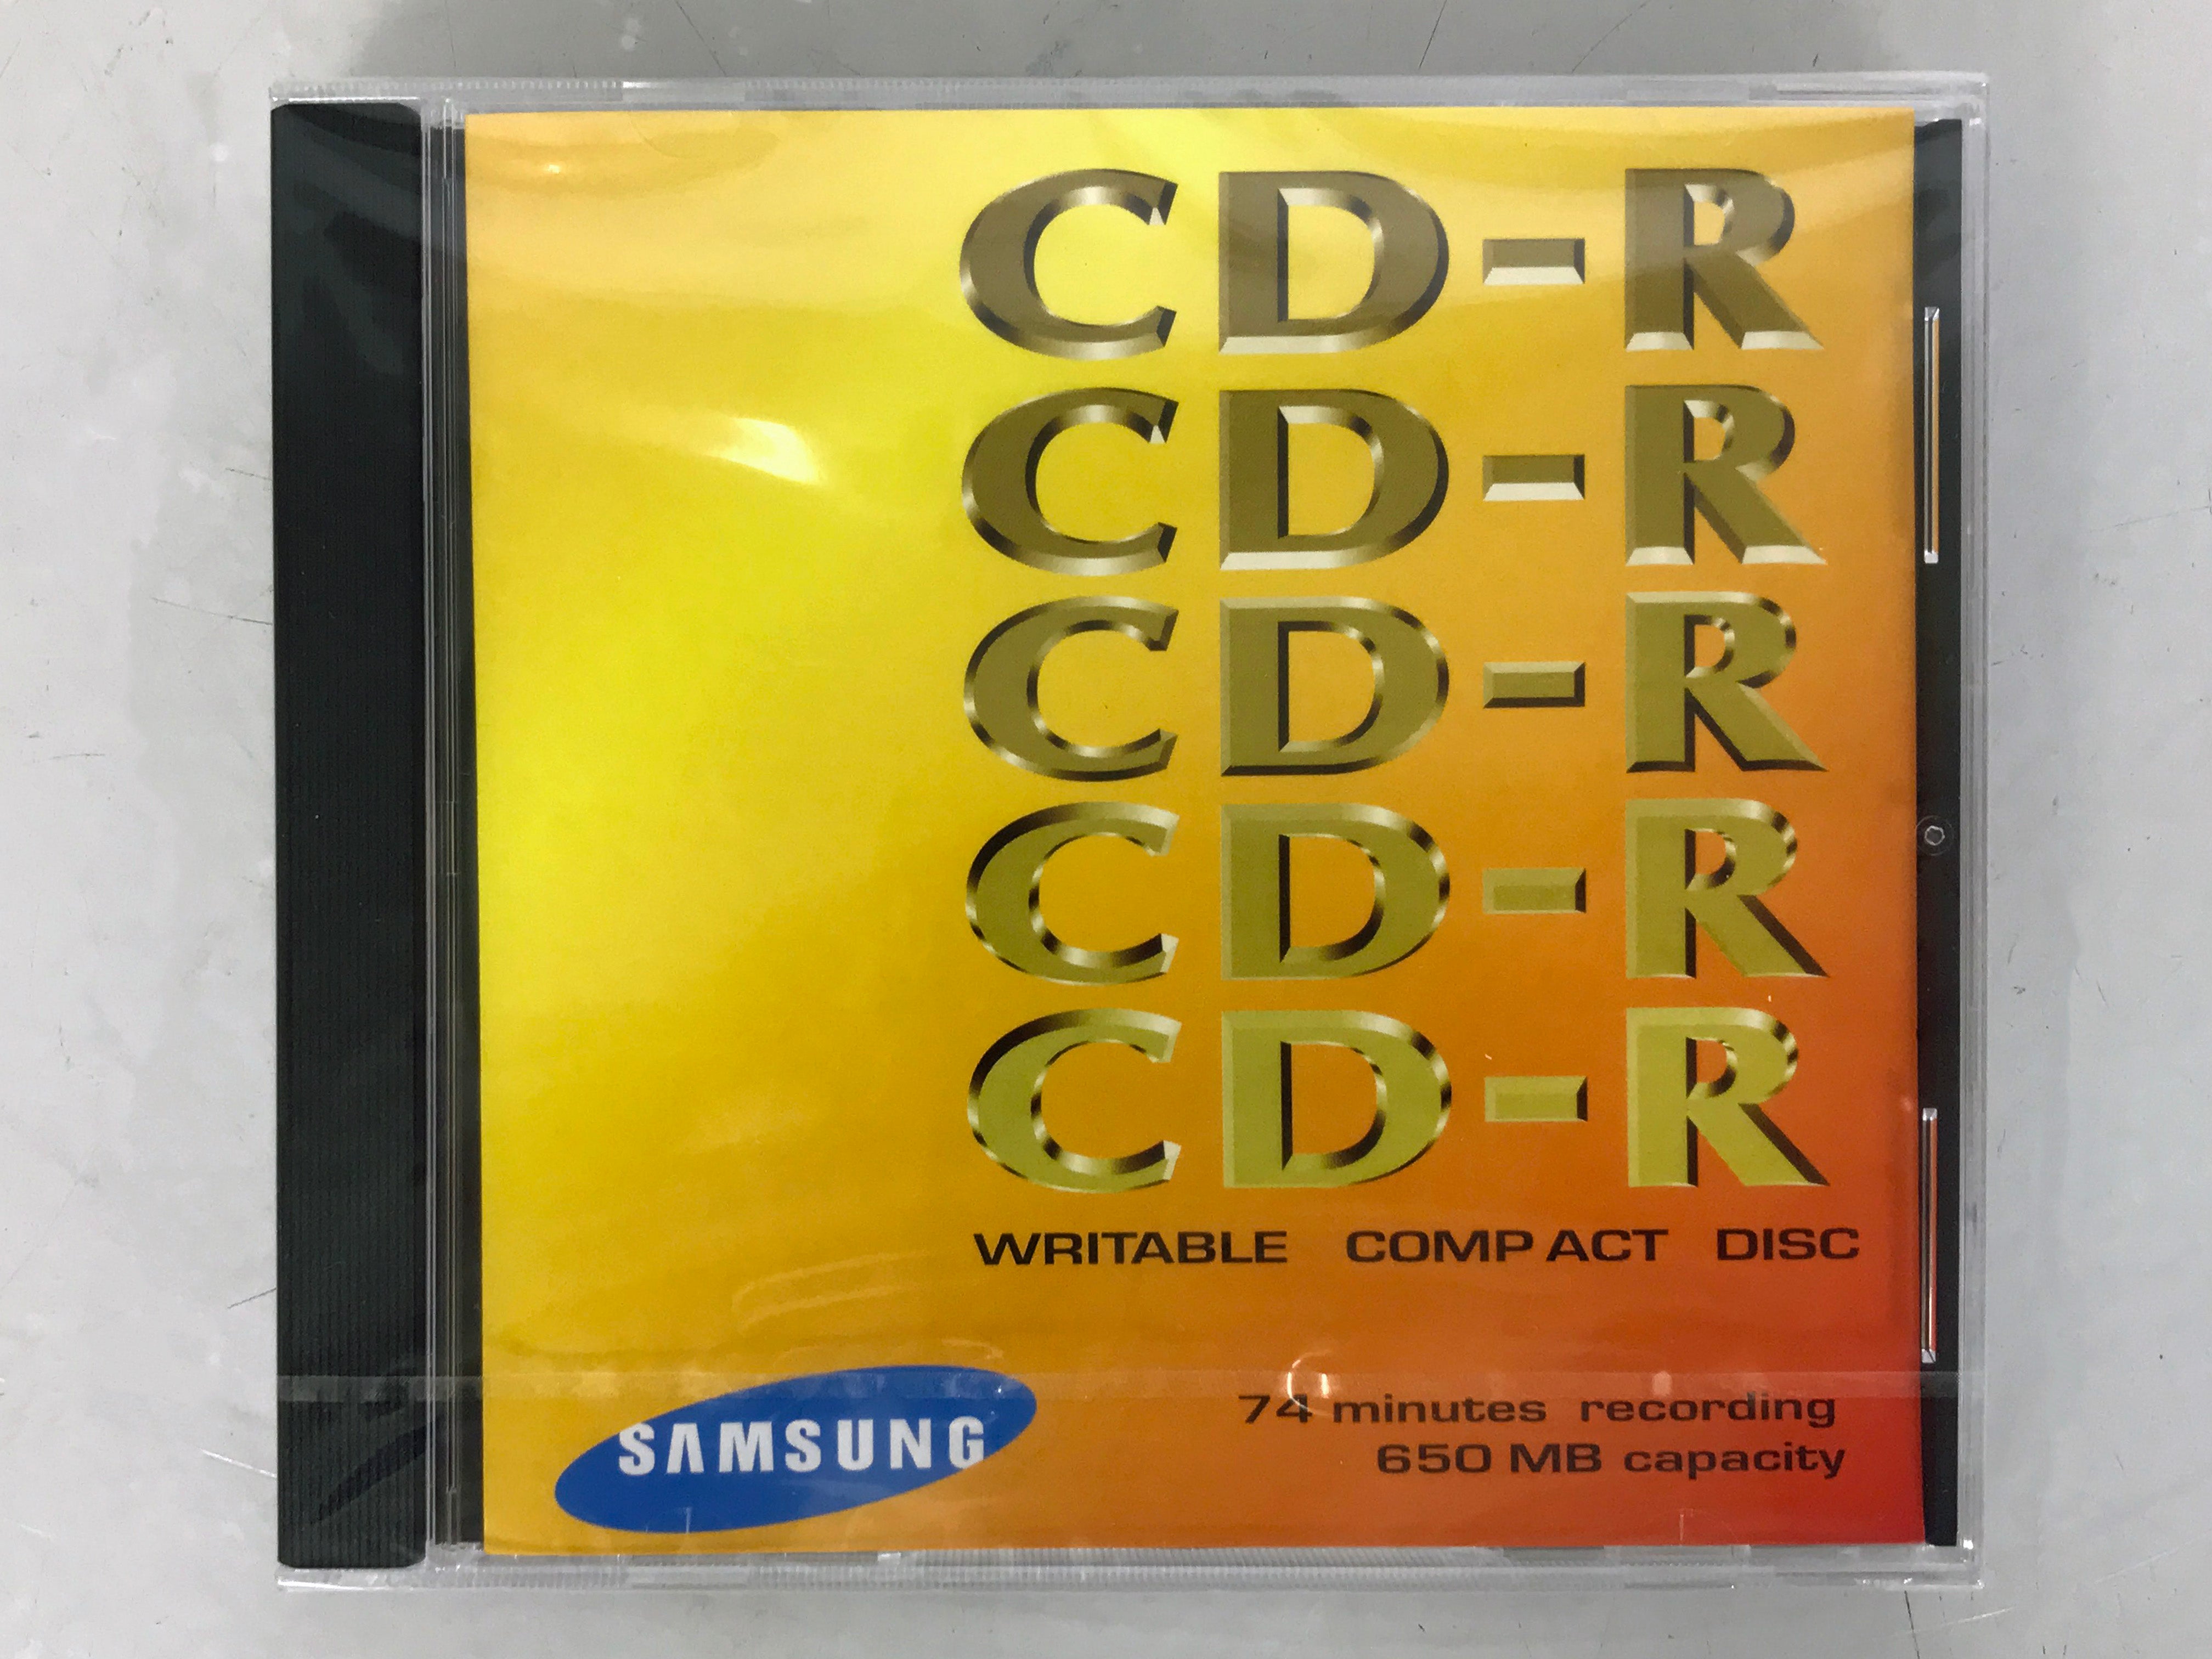 Samsung 650MB CD-R Writable Compact Disc